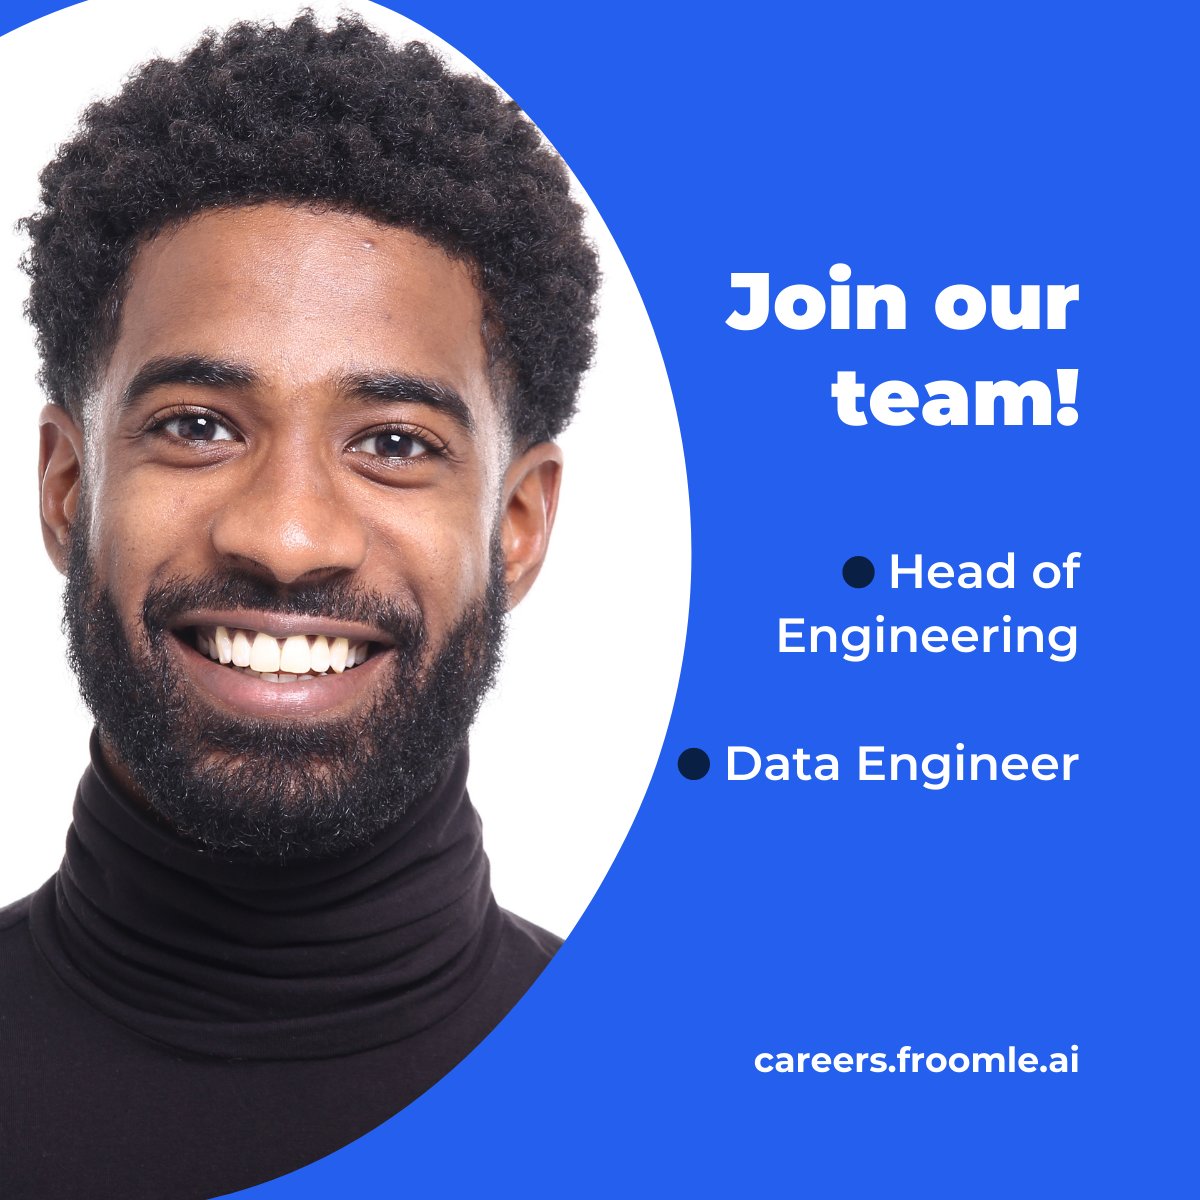 #WeAreHiring Head of Engineering & Data Engineer. Apply now here: careers.froomle.ai/en #belgiumjobs #antwerp #AI